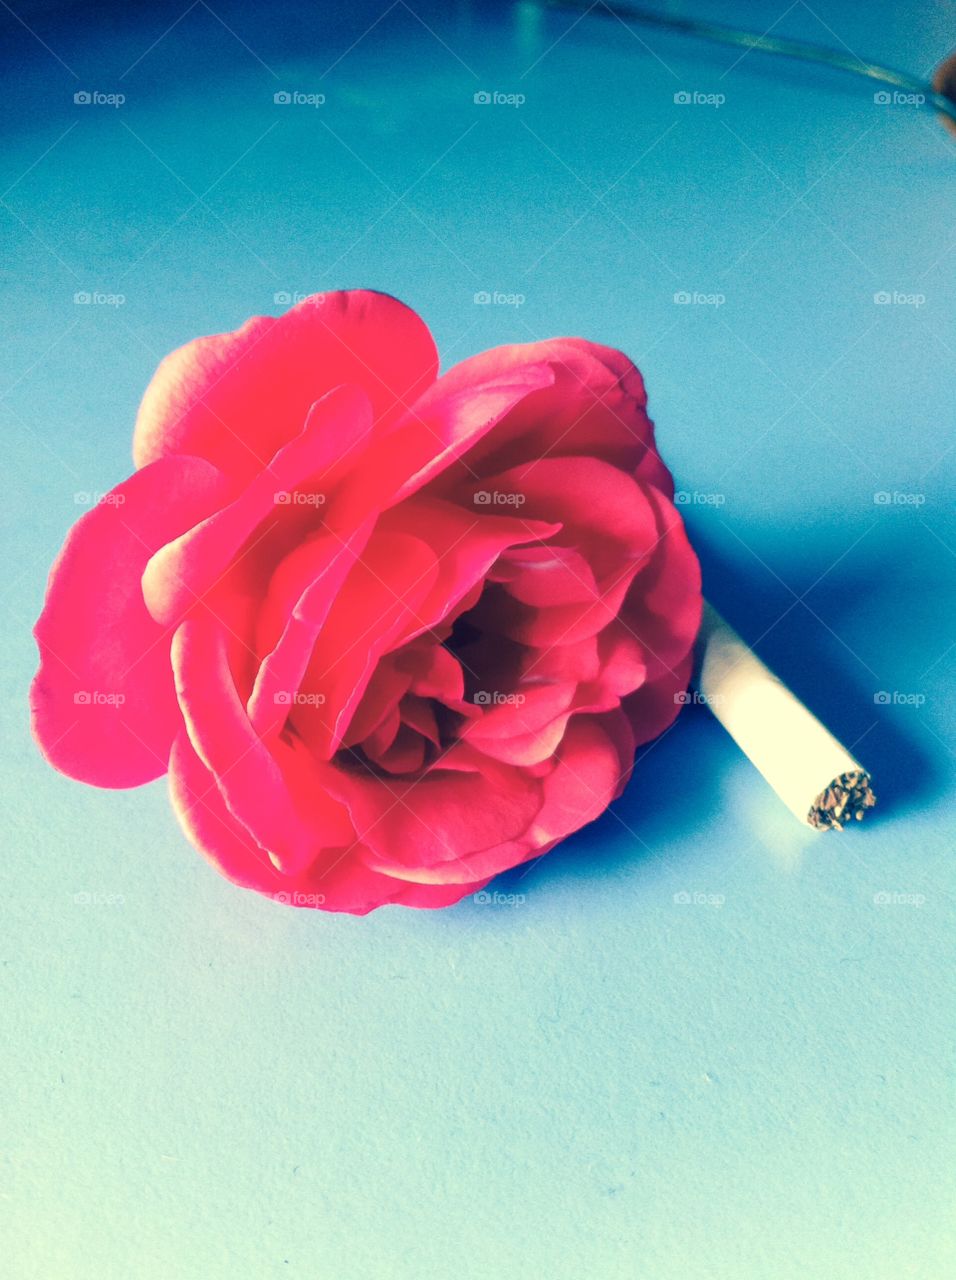 Smoker rose